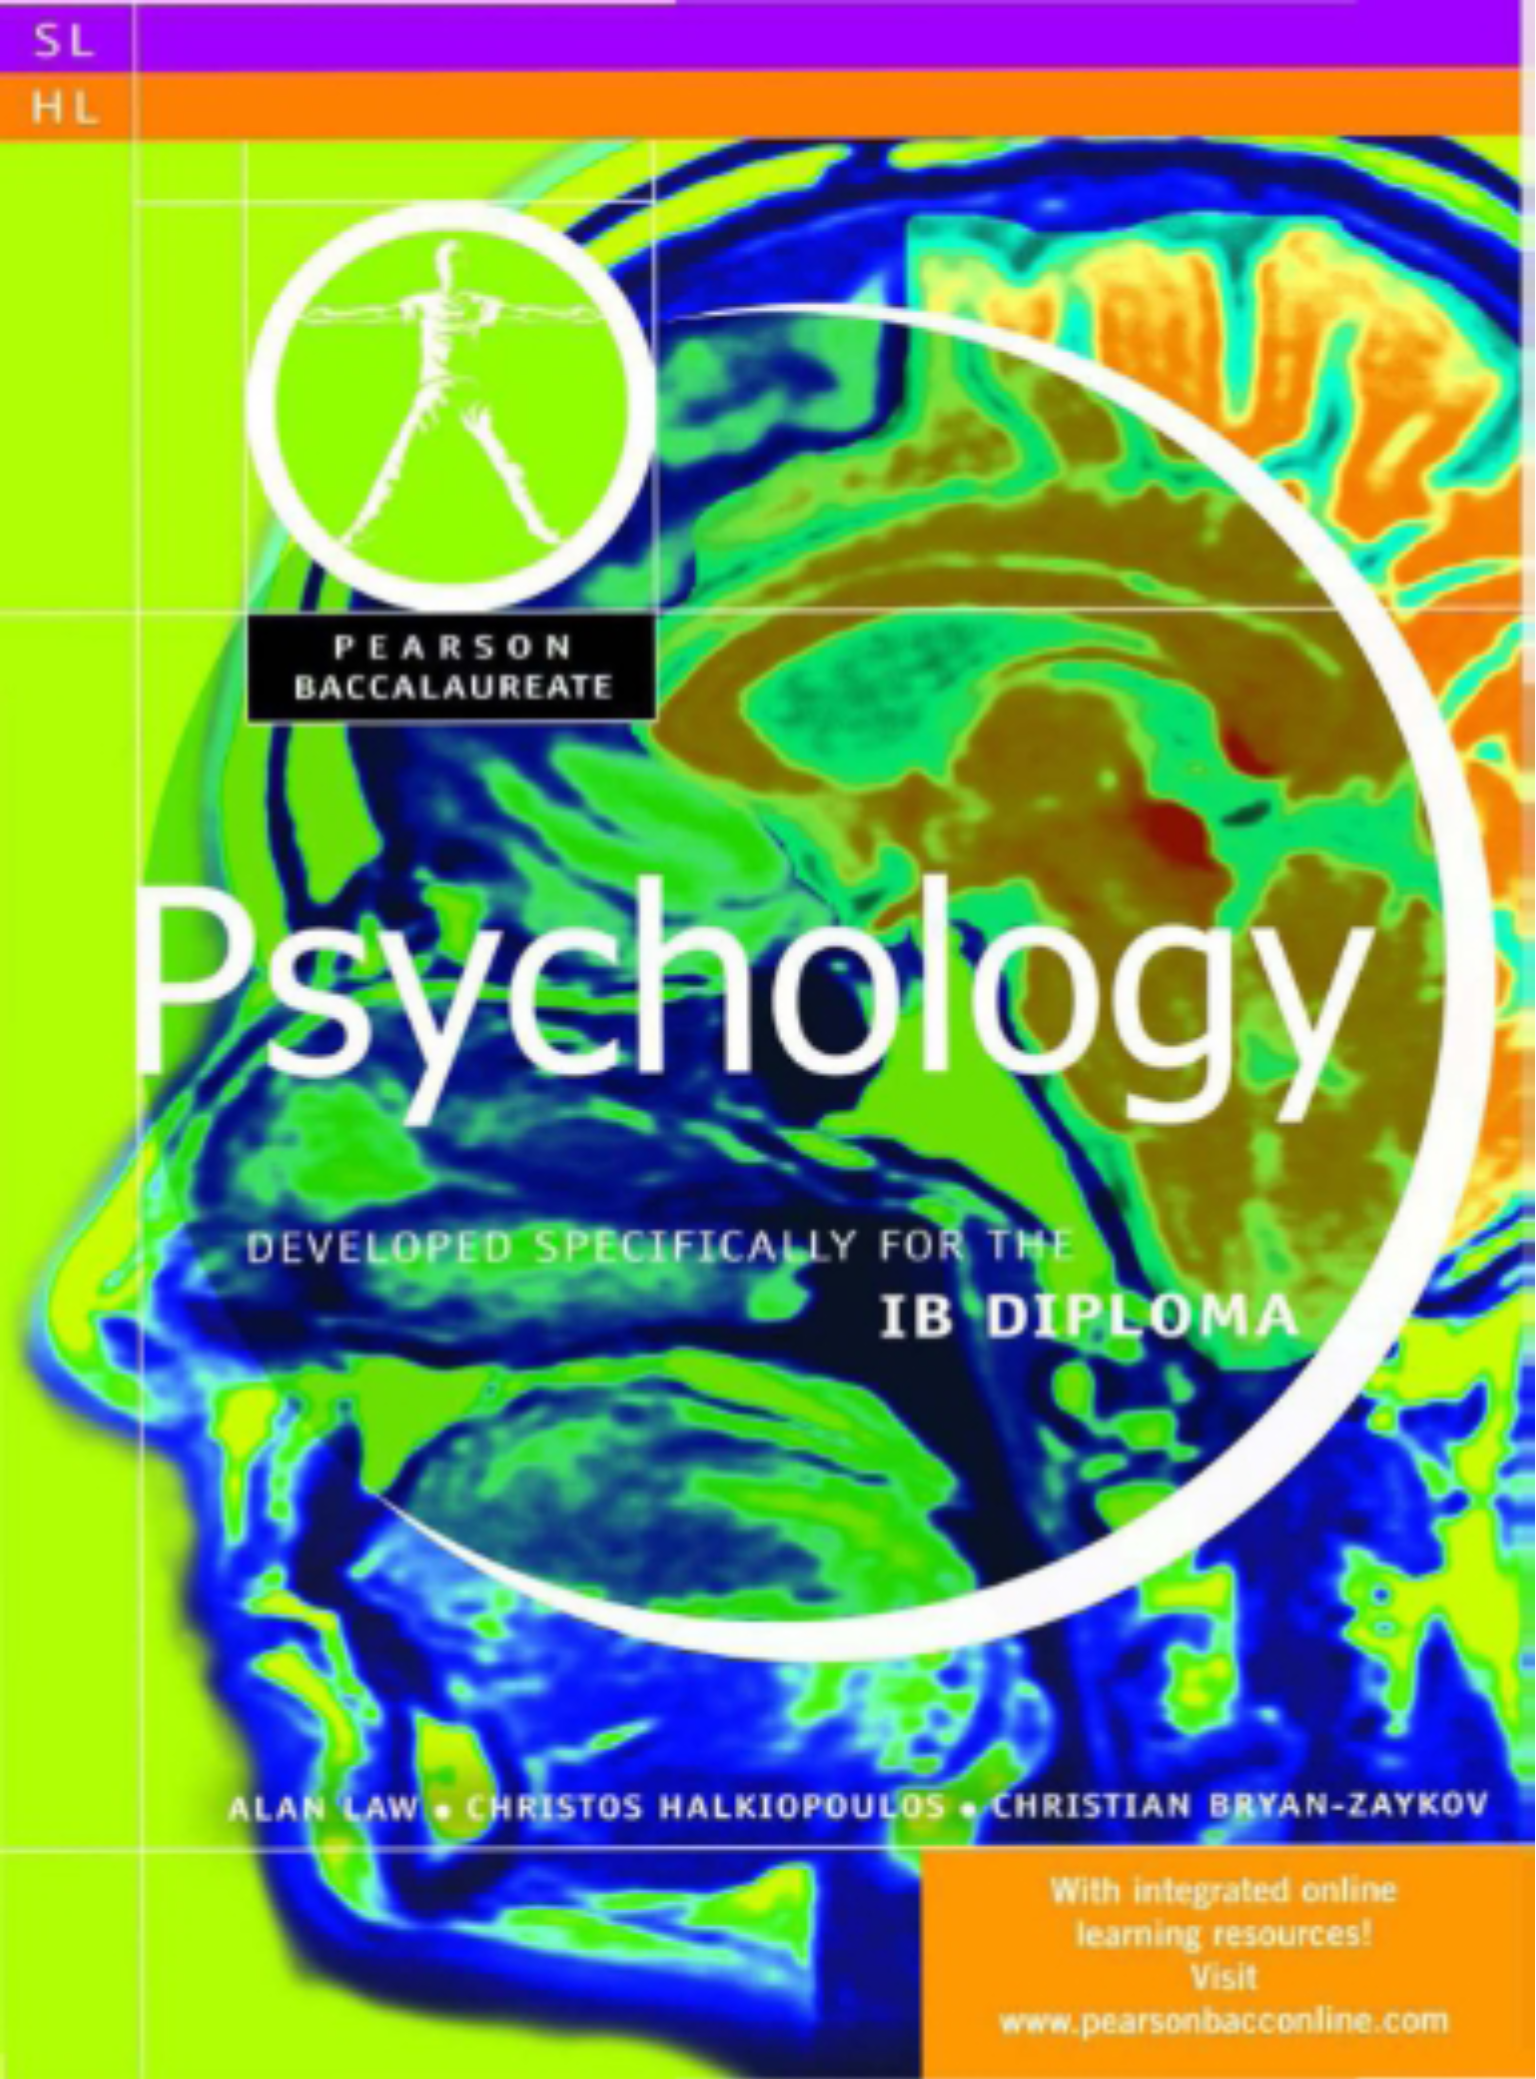 历年国际IB psychology课程教材课本